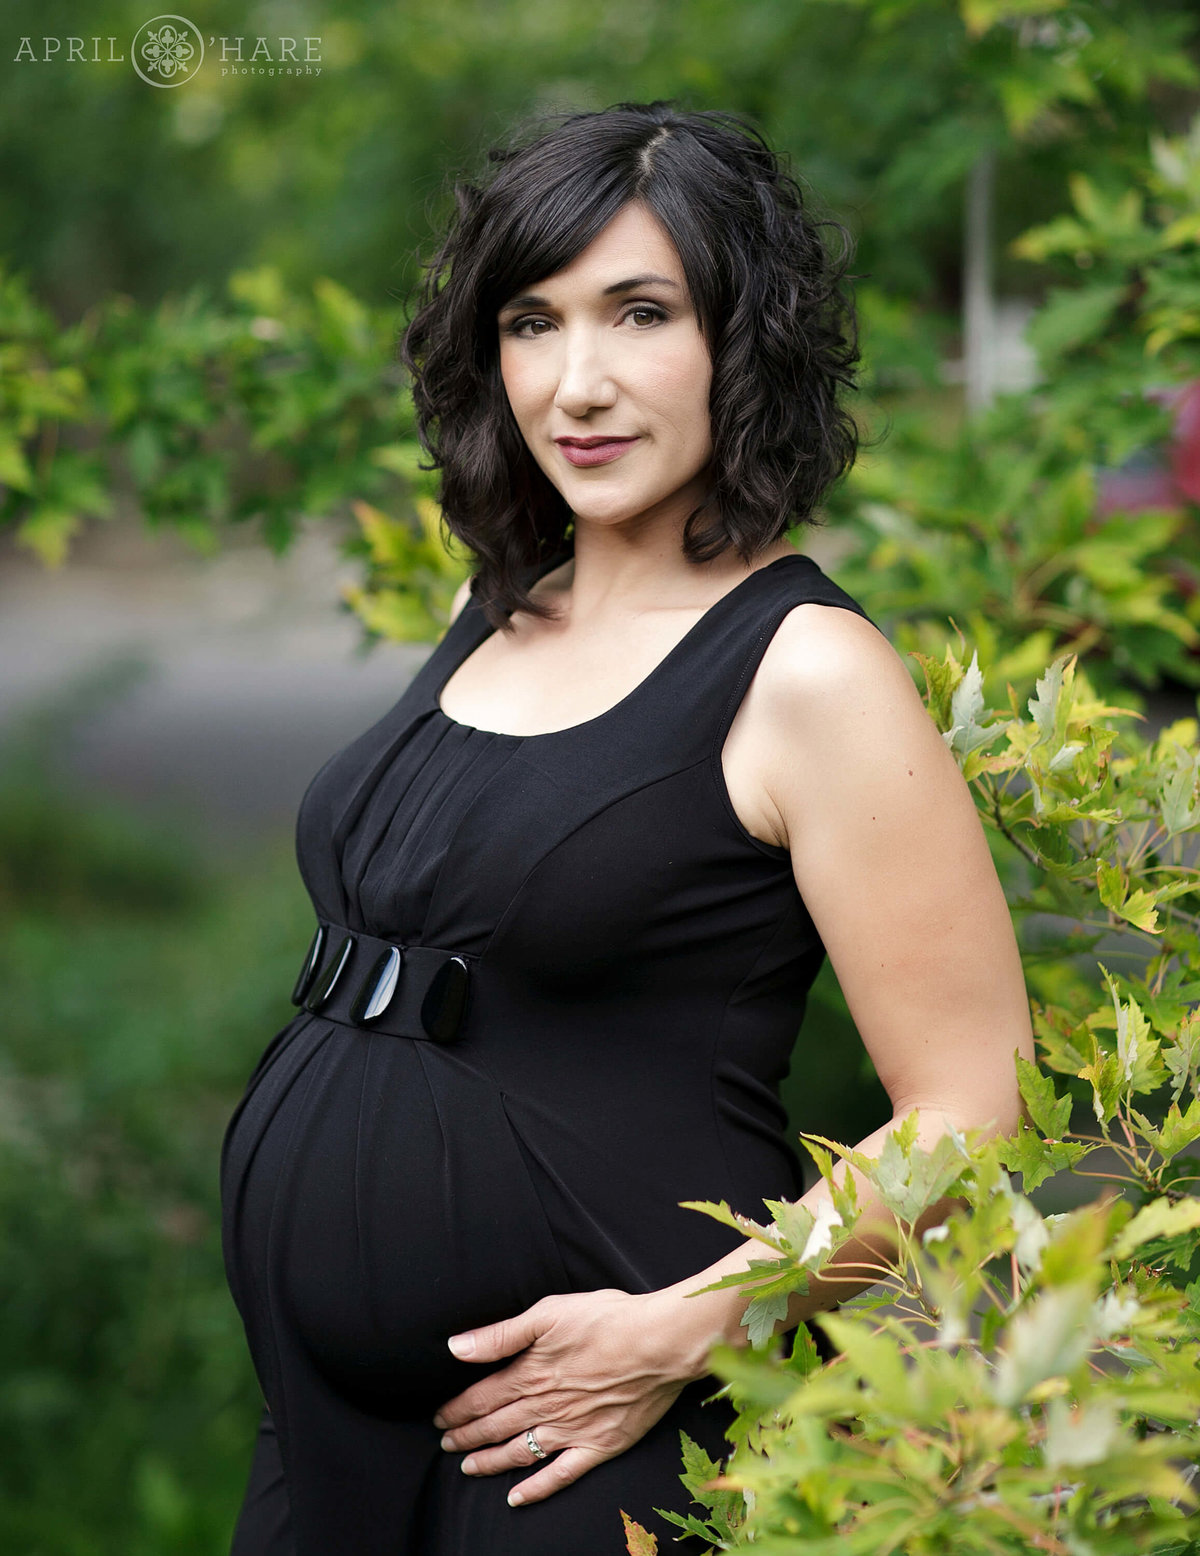 Gorgeous Pregnancy Portrait by Denver Maternity Photographer